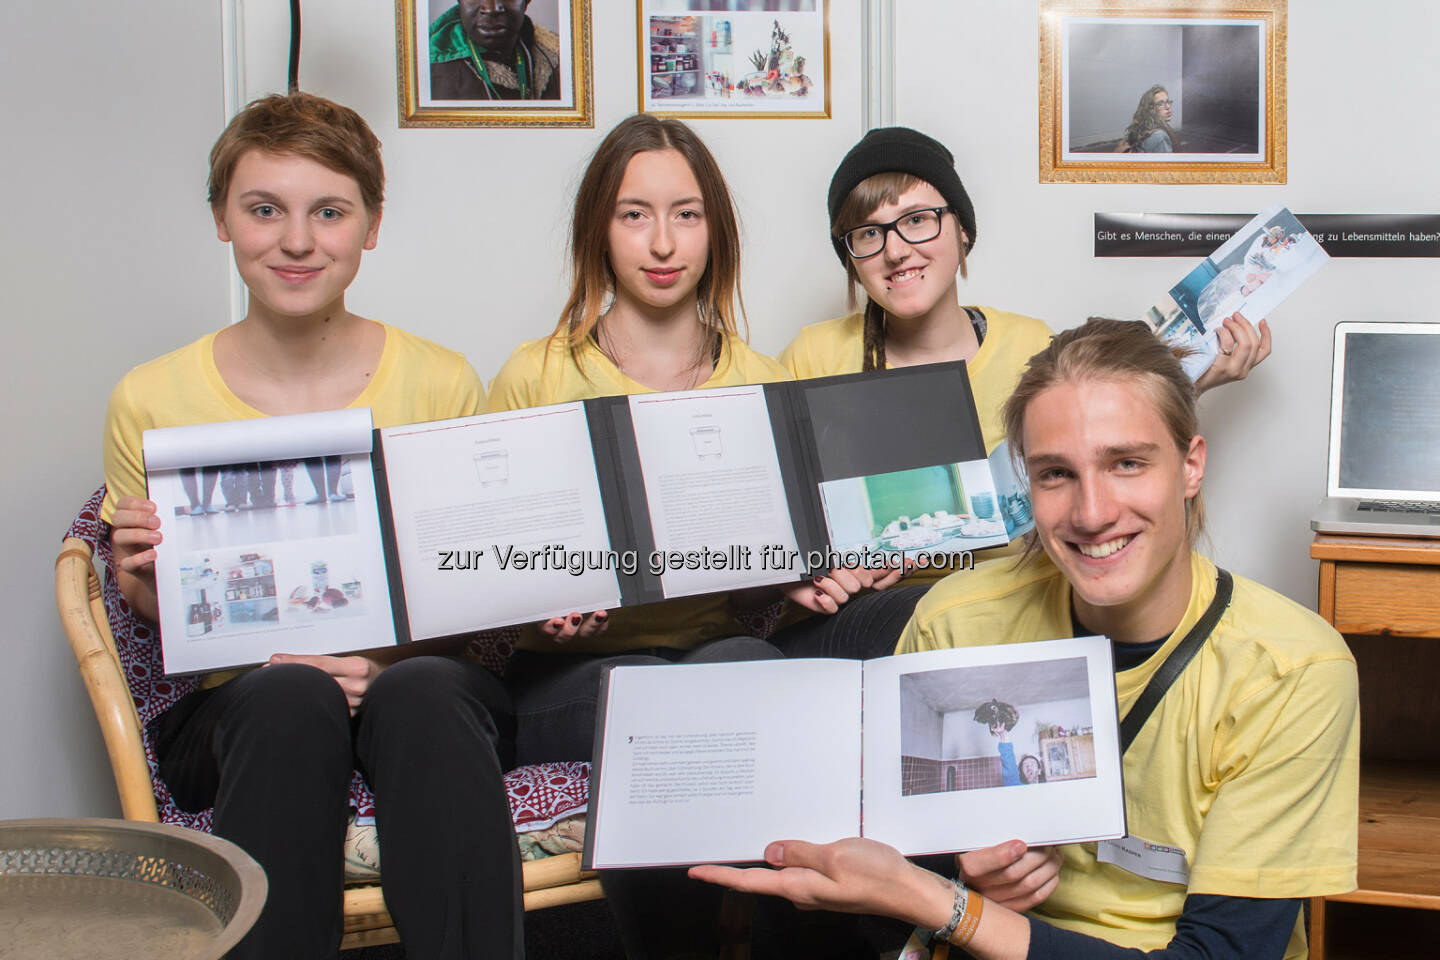 Raiffeisen Klimaschutz-Initiative: Nachwuchsforscher-Team mit Sustainability Award bei Jugend Innovativ ausgezeichnet (aws / Voglhuber)